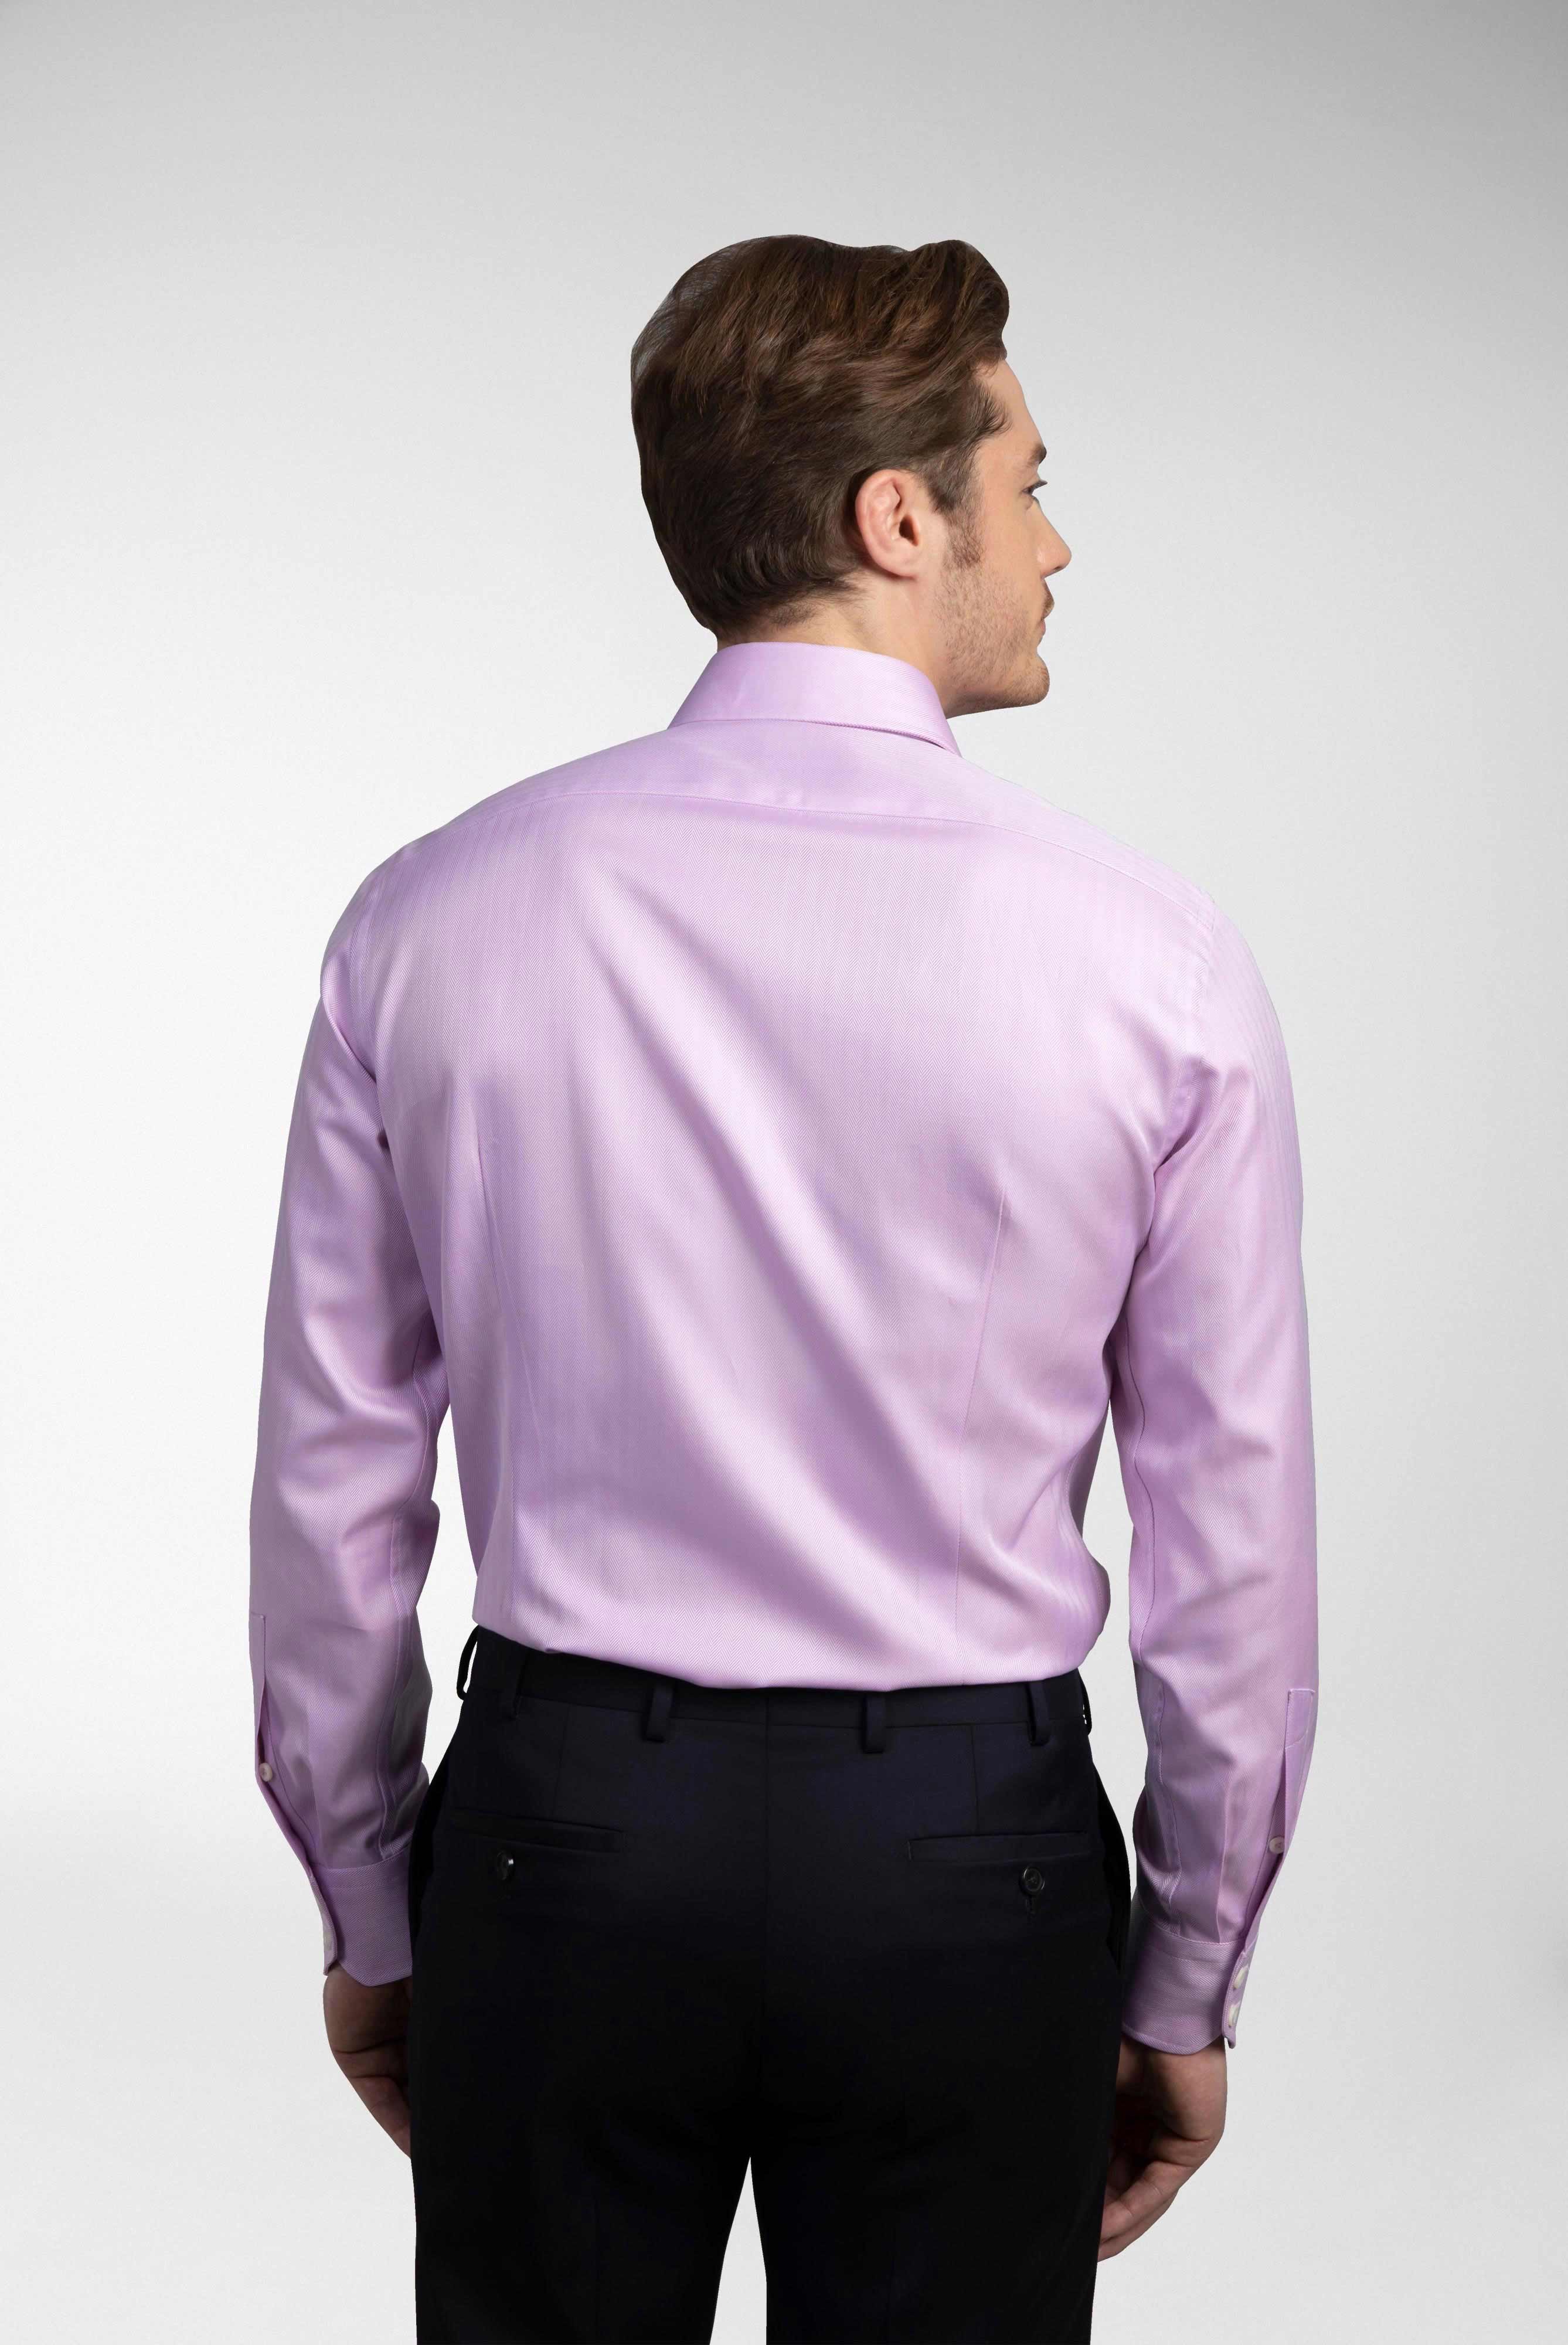 Business Hemden+Twill Hemd mit Fischgrat Tailor Fit+20.2020.AV.102501.610.37